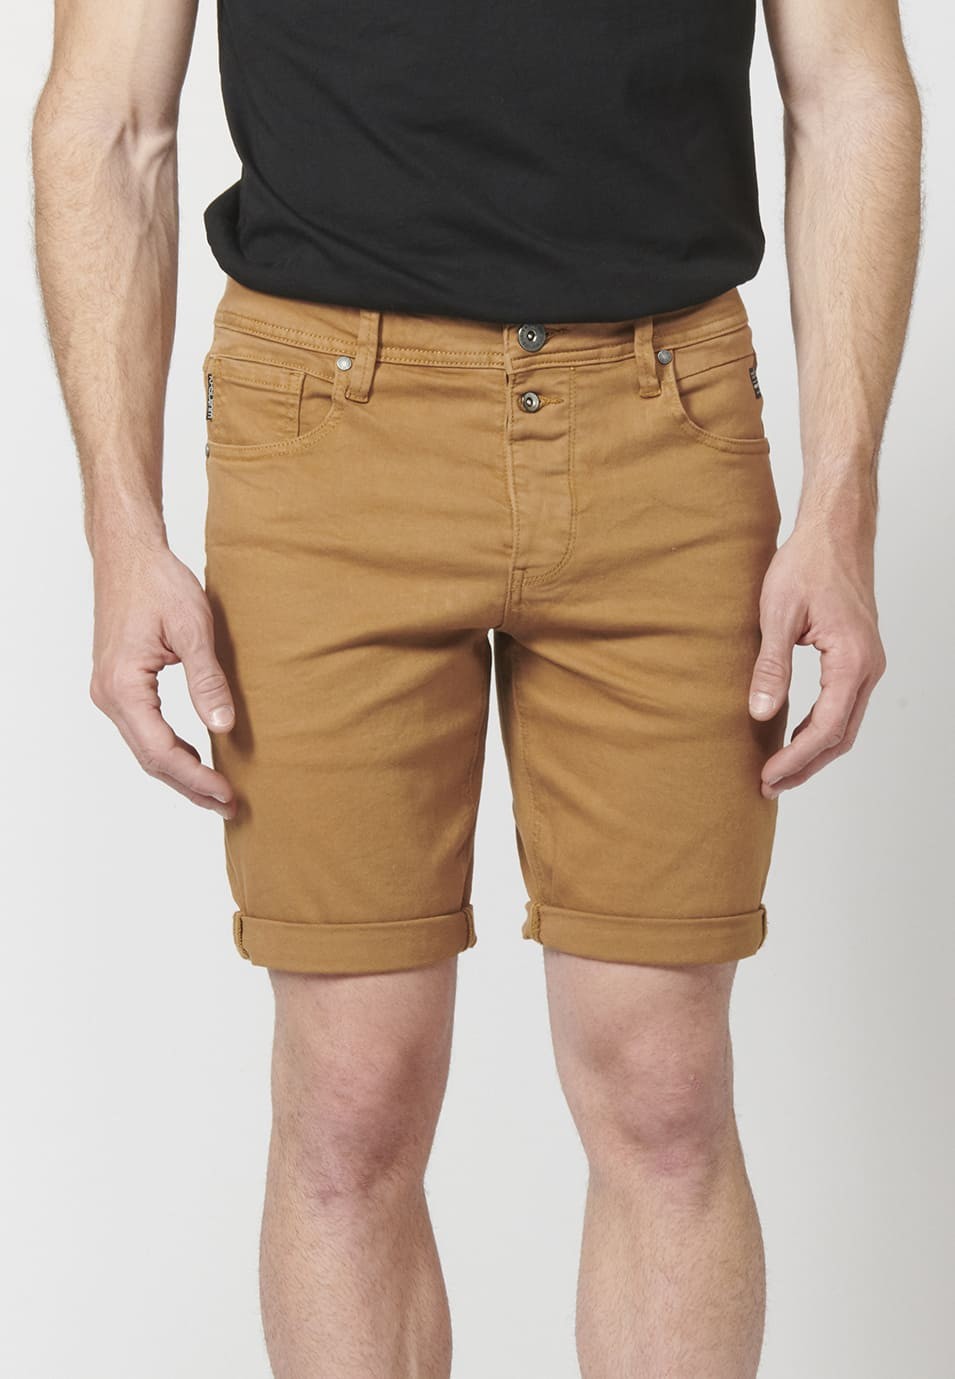 Pantalon corto color tapered fit con detalle de cadena extraíble para Hombre 1